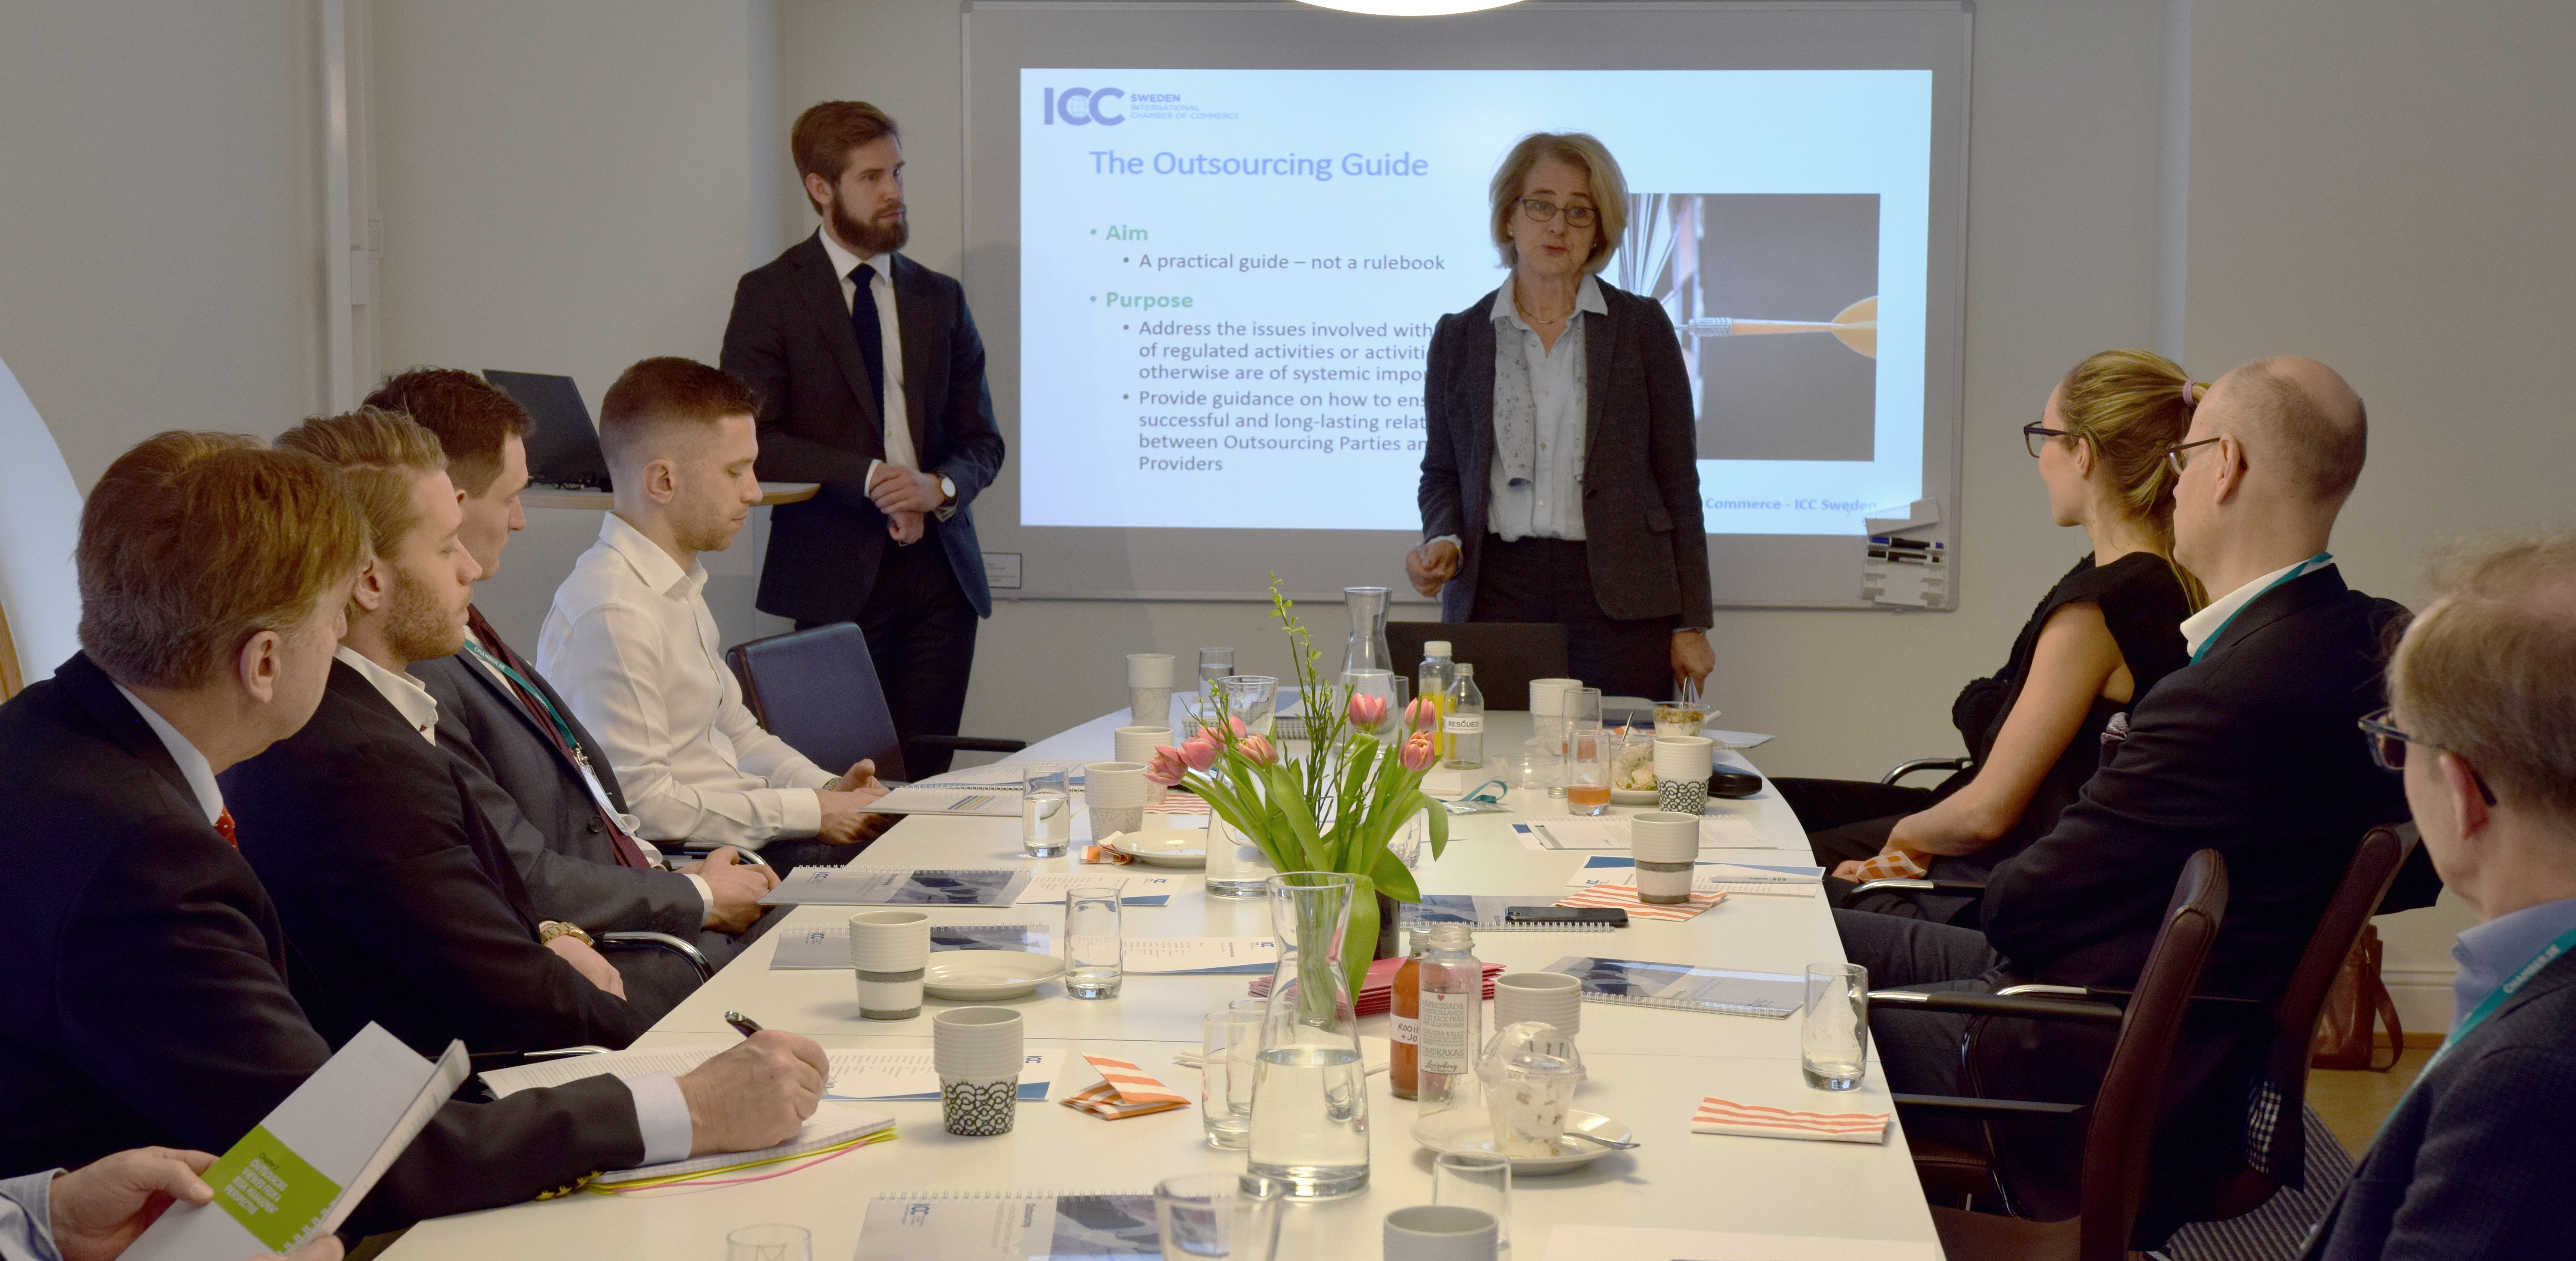 Talarna Per Johan Gidlund och Christina Strandman Ullrich diskuterar Outsourcing på morgonens frukostseminarium hos ICC Sweden